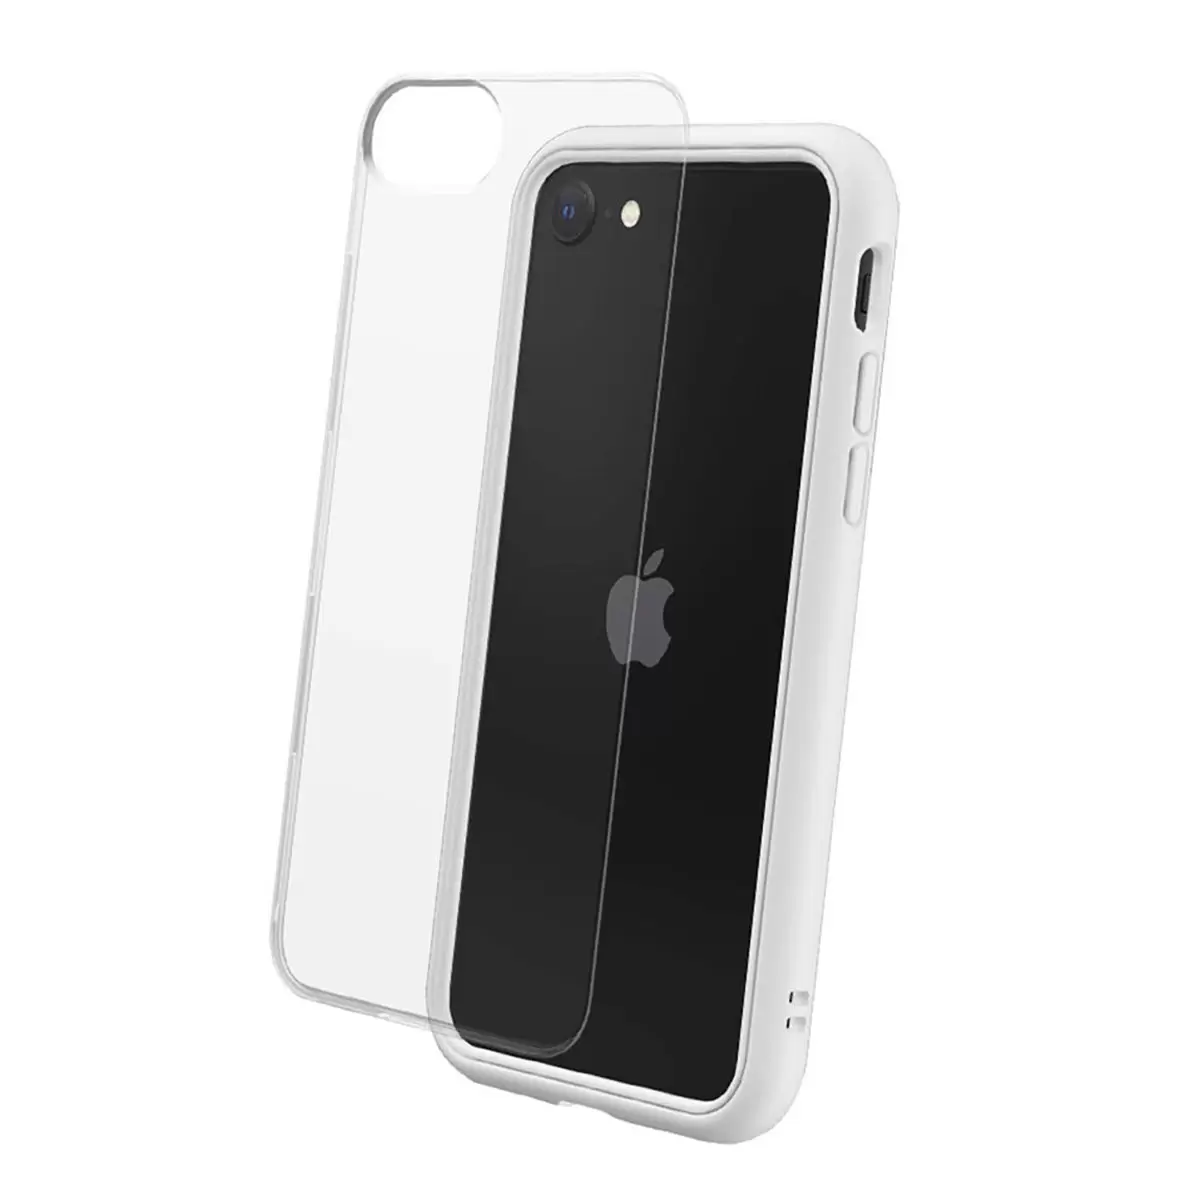 犀牛盾 iPhone SE MOD NX 防摔手機殼 + 9H 3D 滿版螢幕玻璃保護貼 白